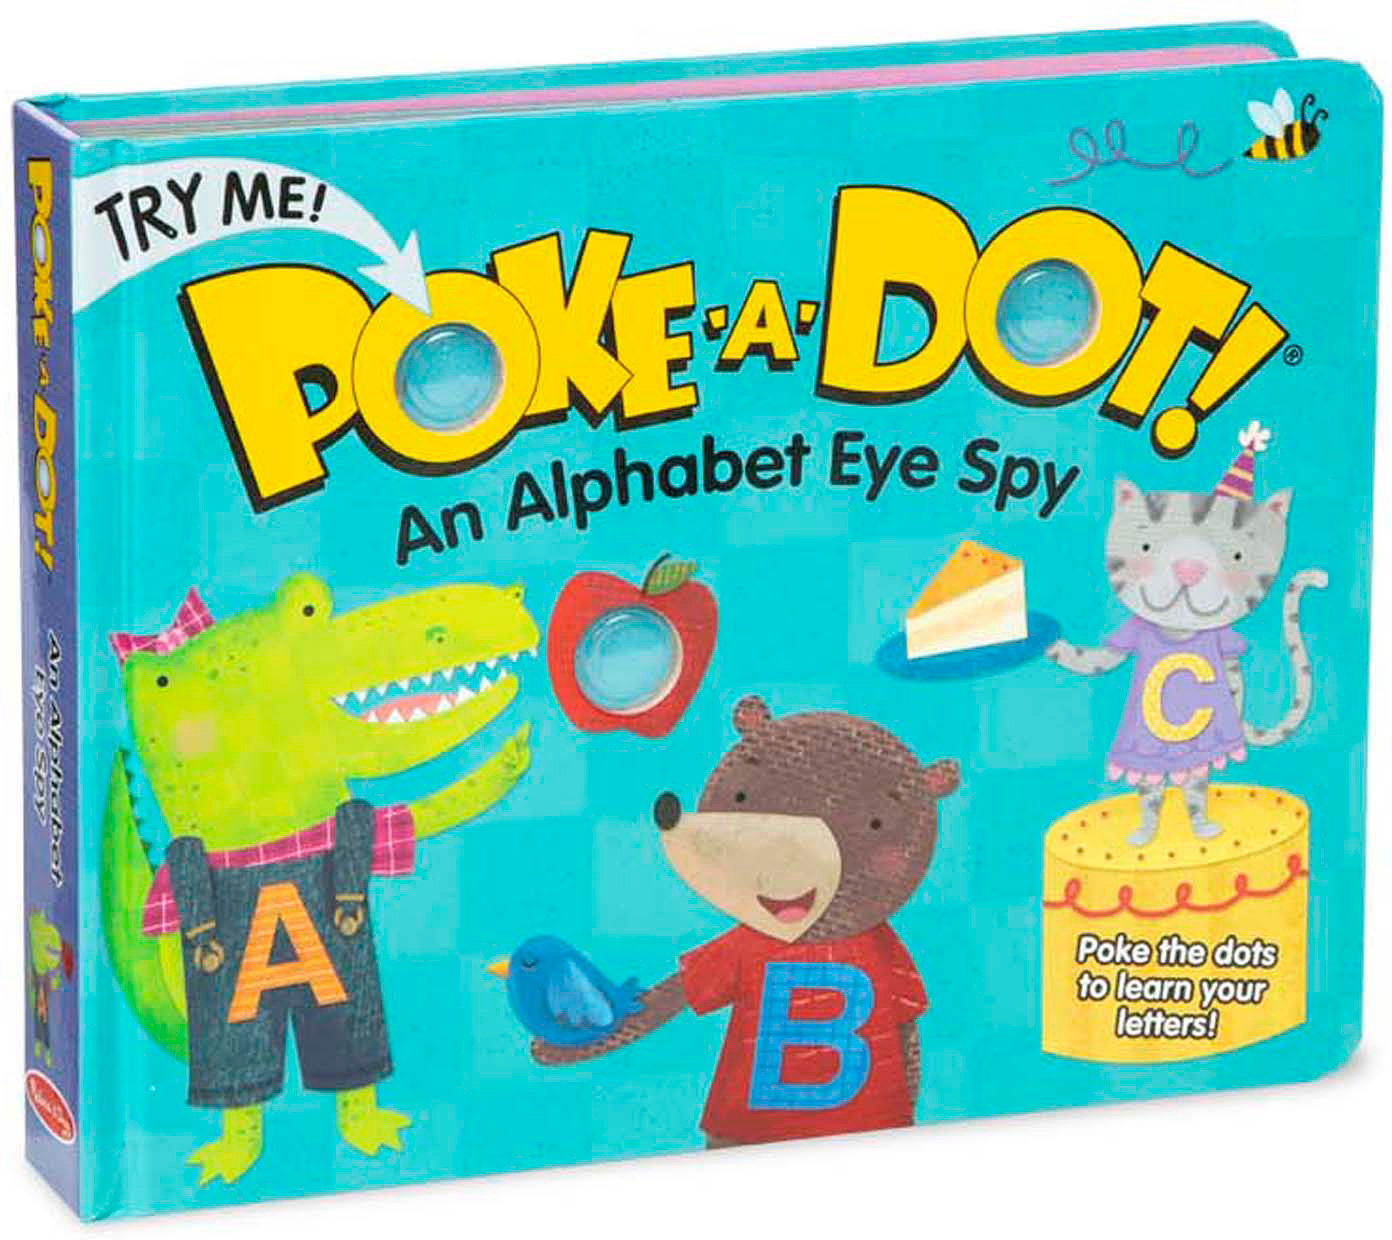 Poke-A-Dot! An Alphabet Eye Spy [Book]